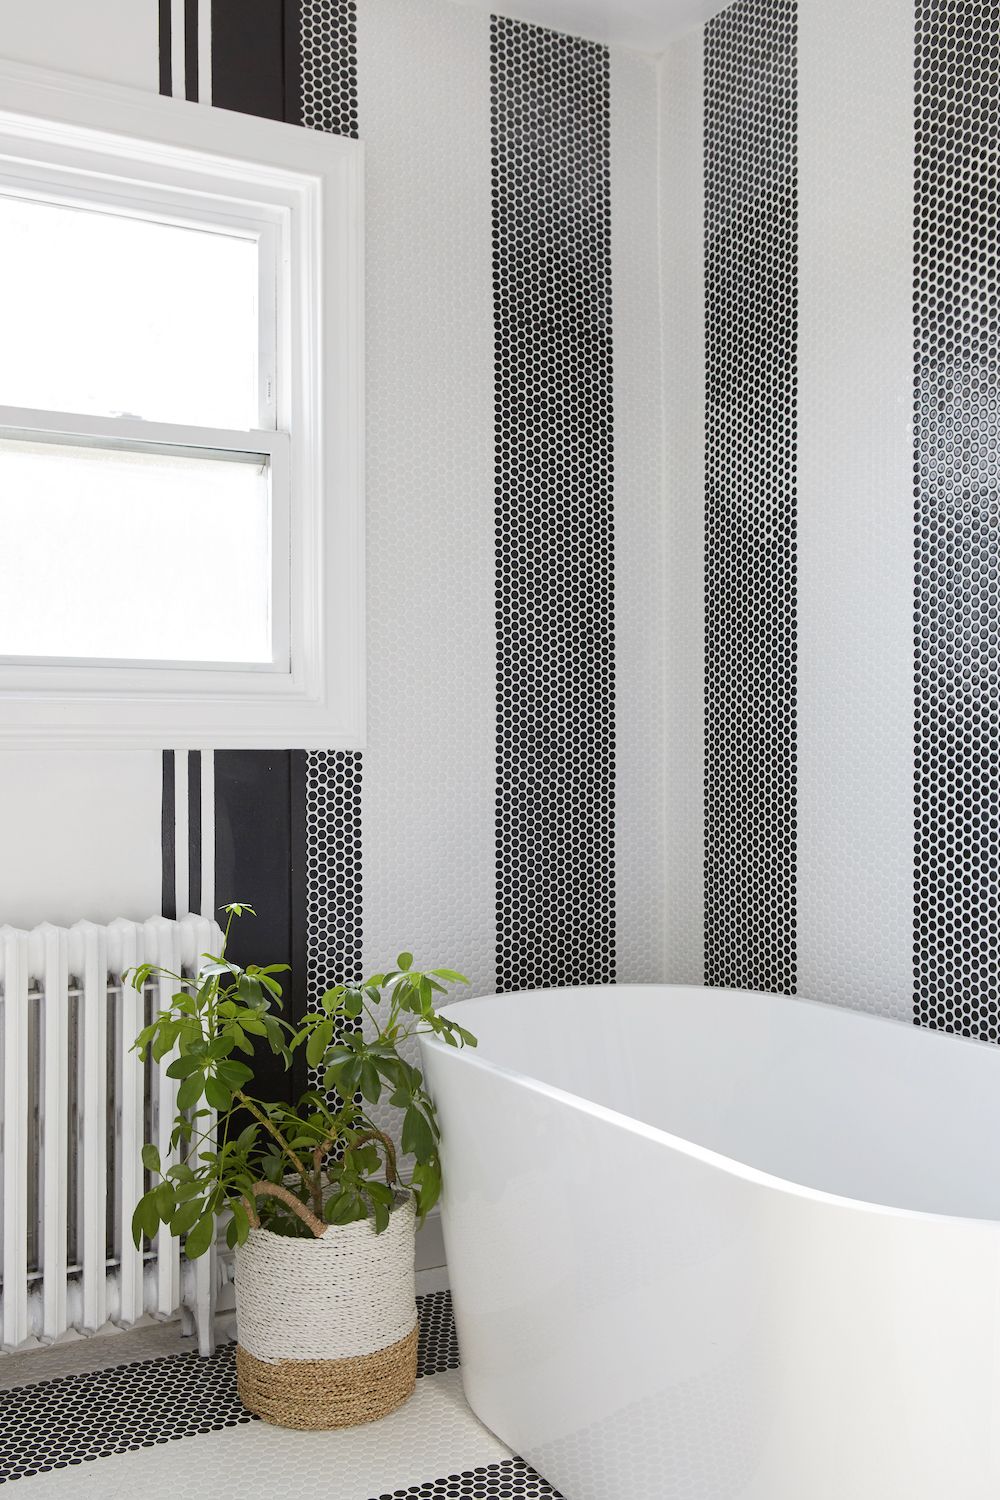 48 Bathroom Tile Ideas Bath, Tile Pattern Ideas For Bathroom